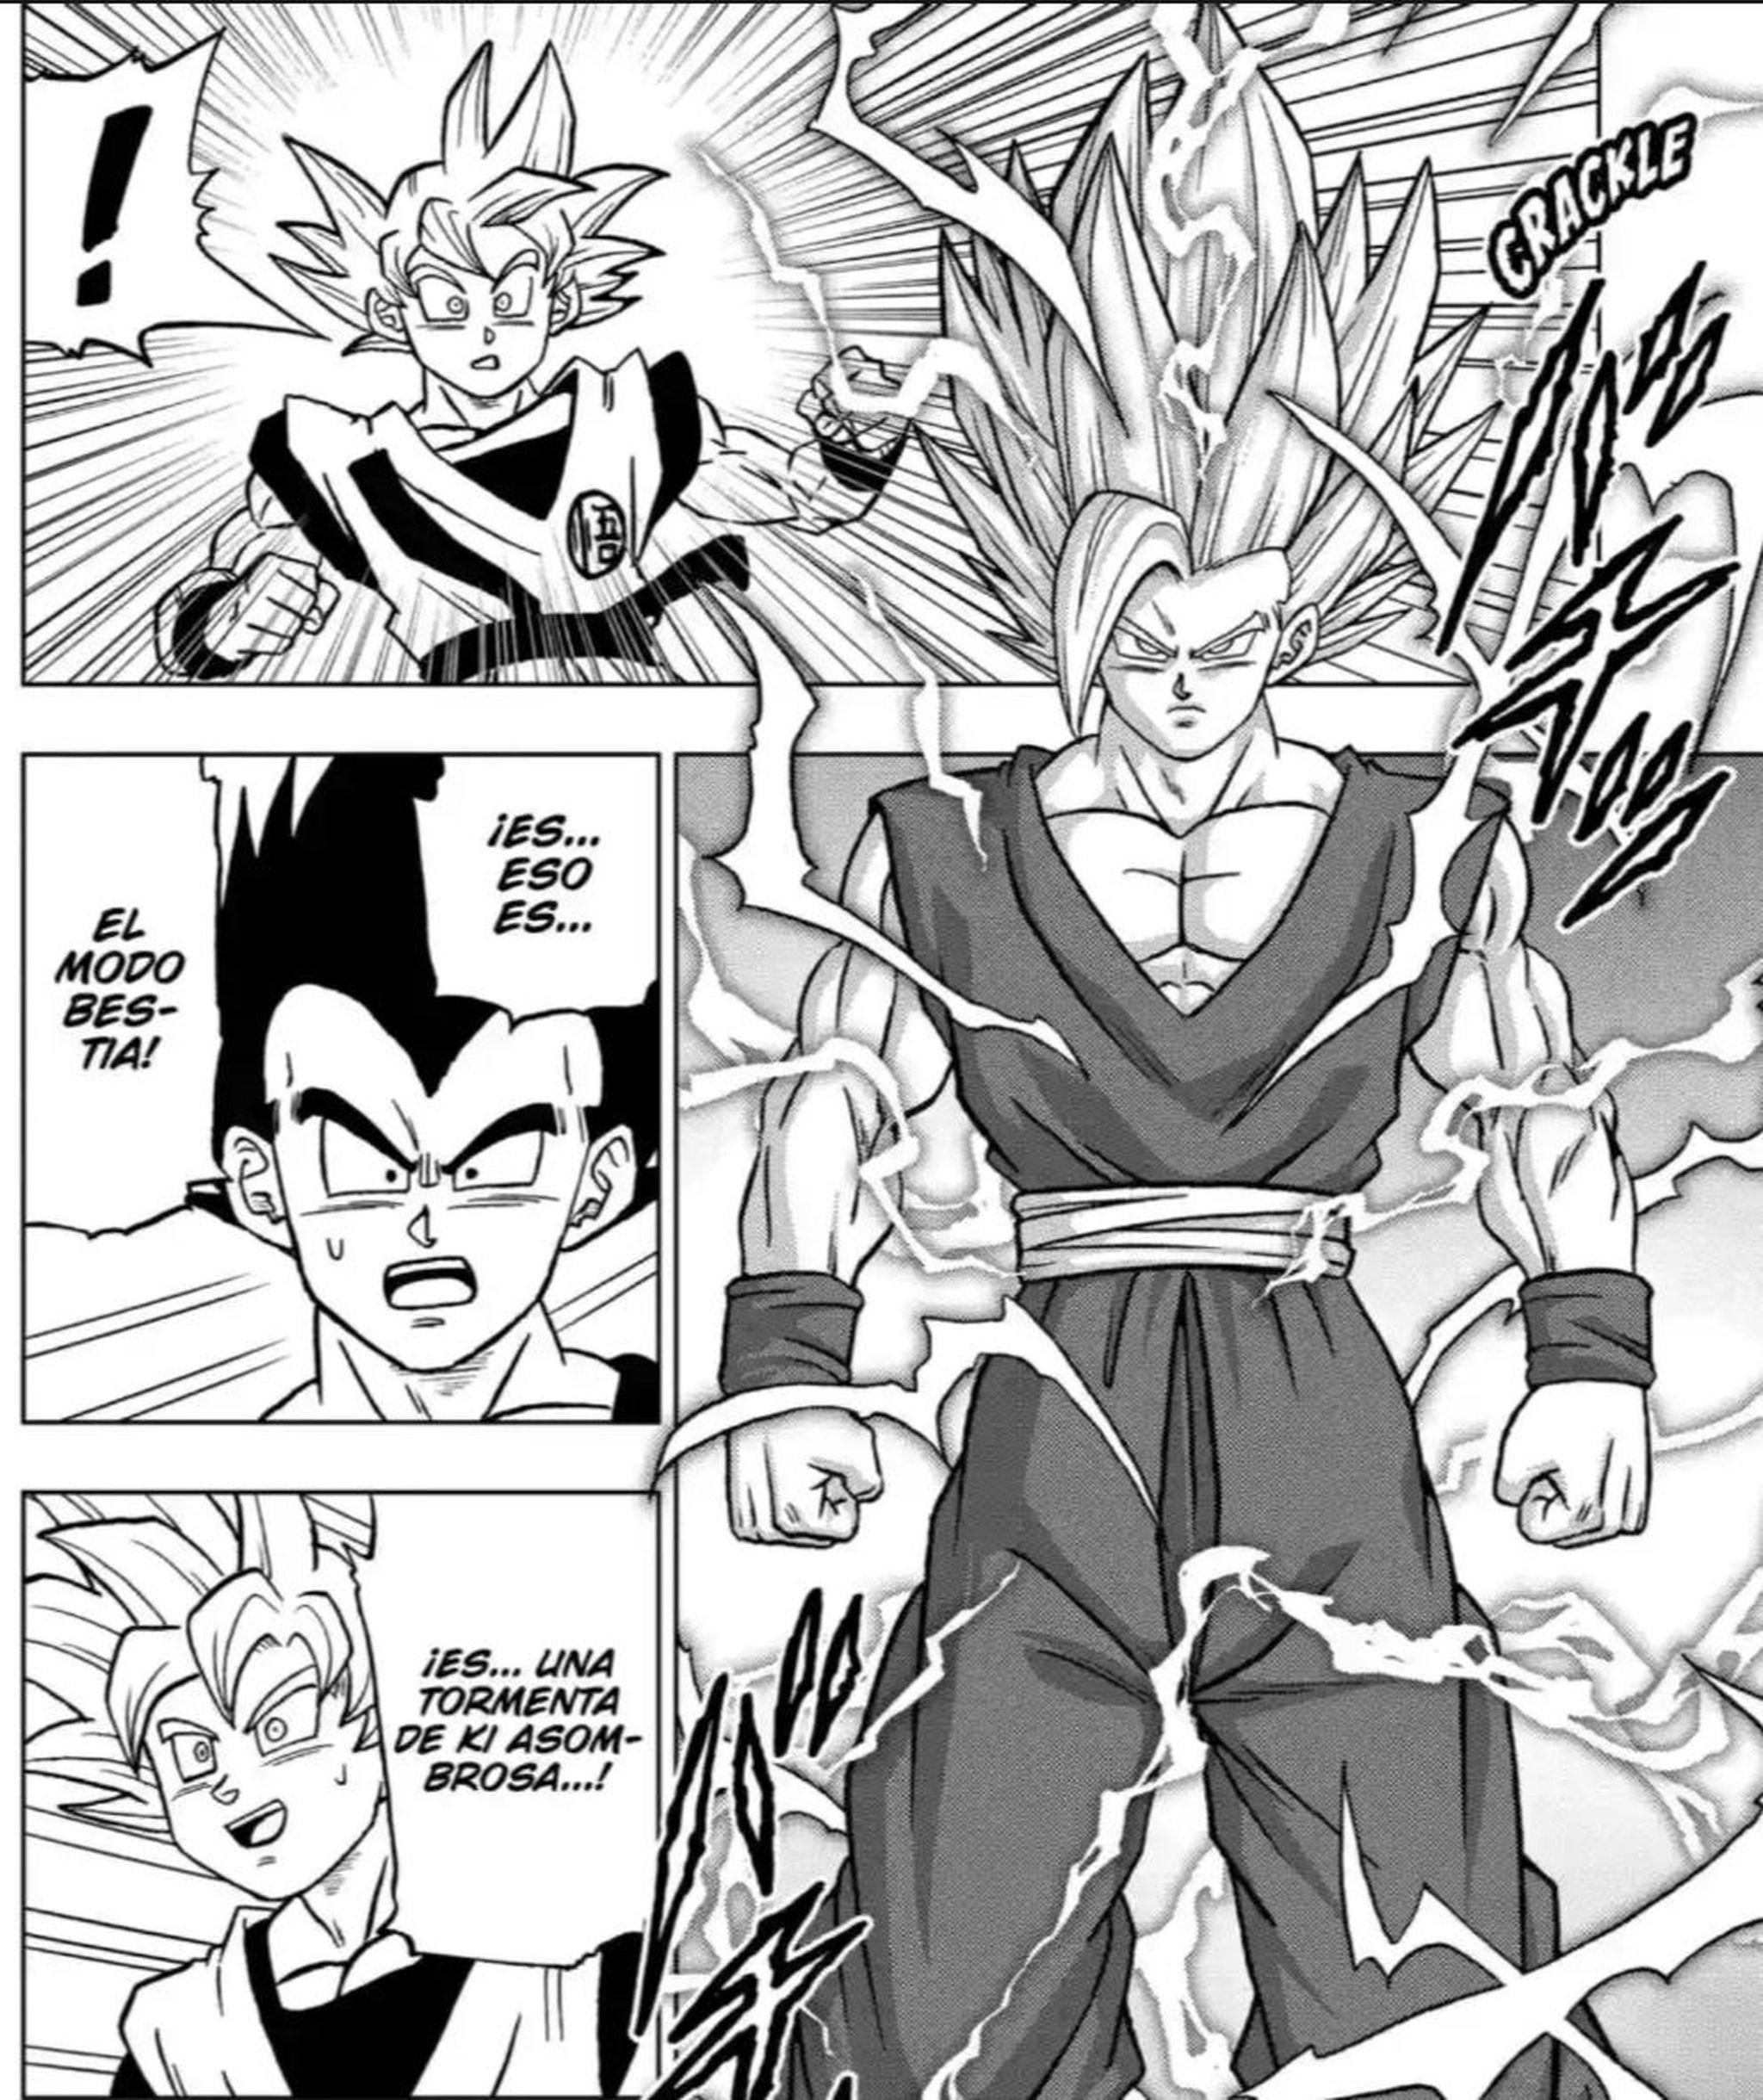 Crítica del capítulo 102 de Dragon Ball Super en el que Goku y Gohan se enfrentan con sus máximos poderes: Ultra Instinto VS Bestia 